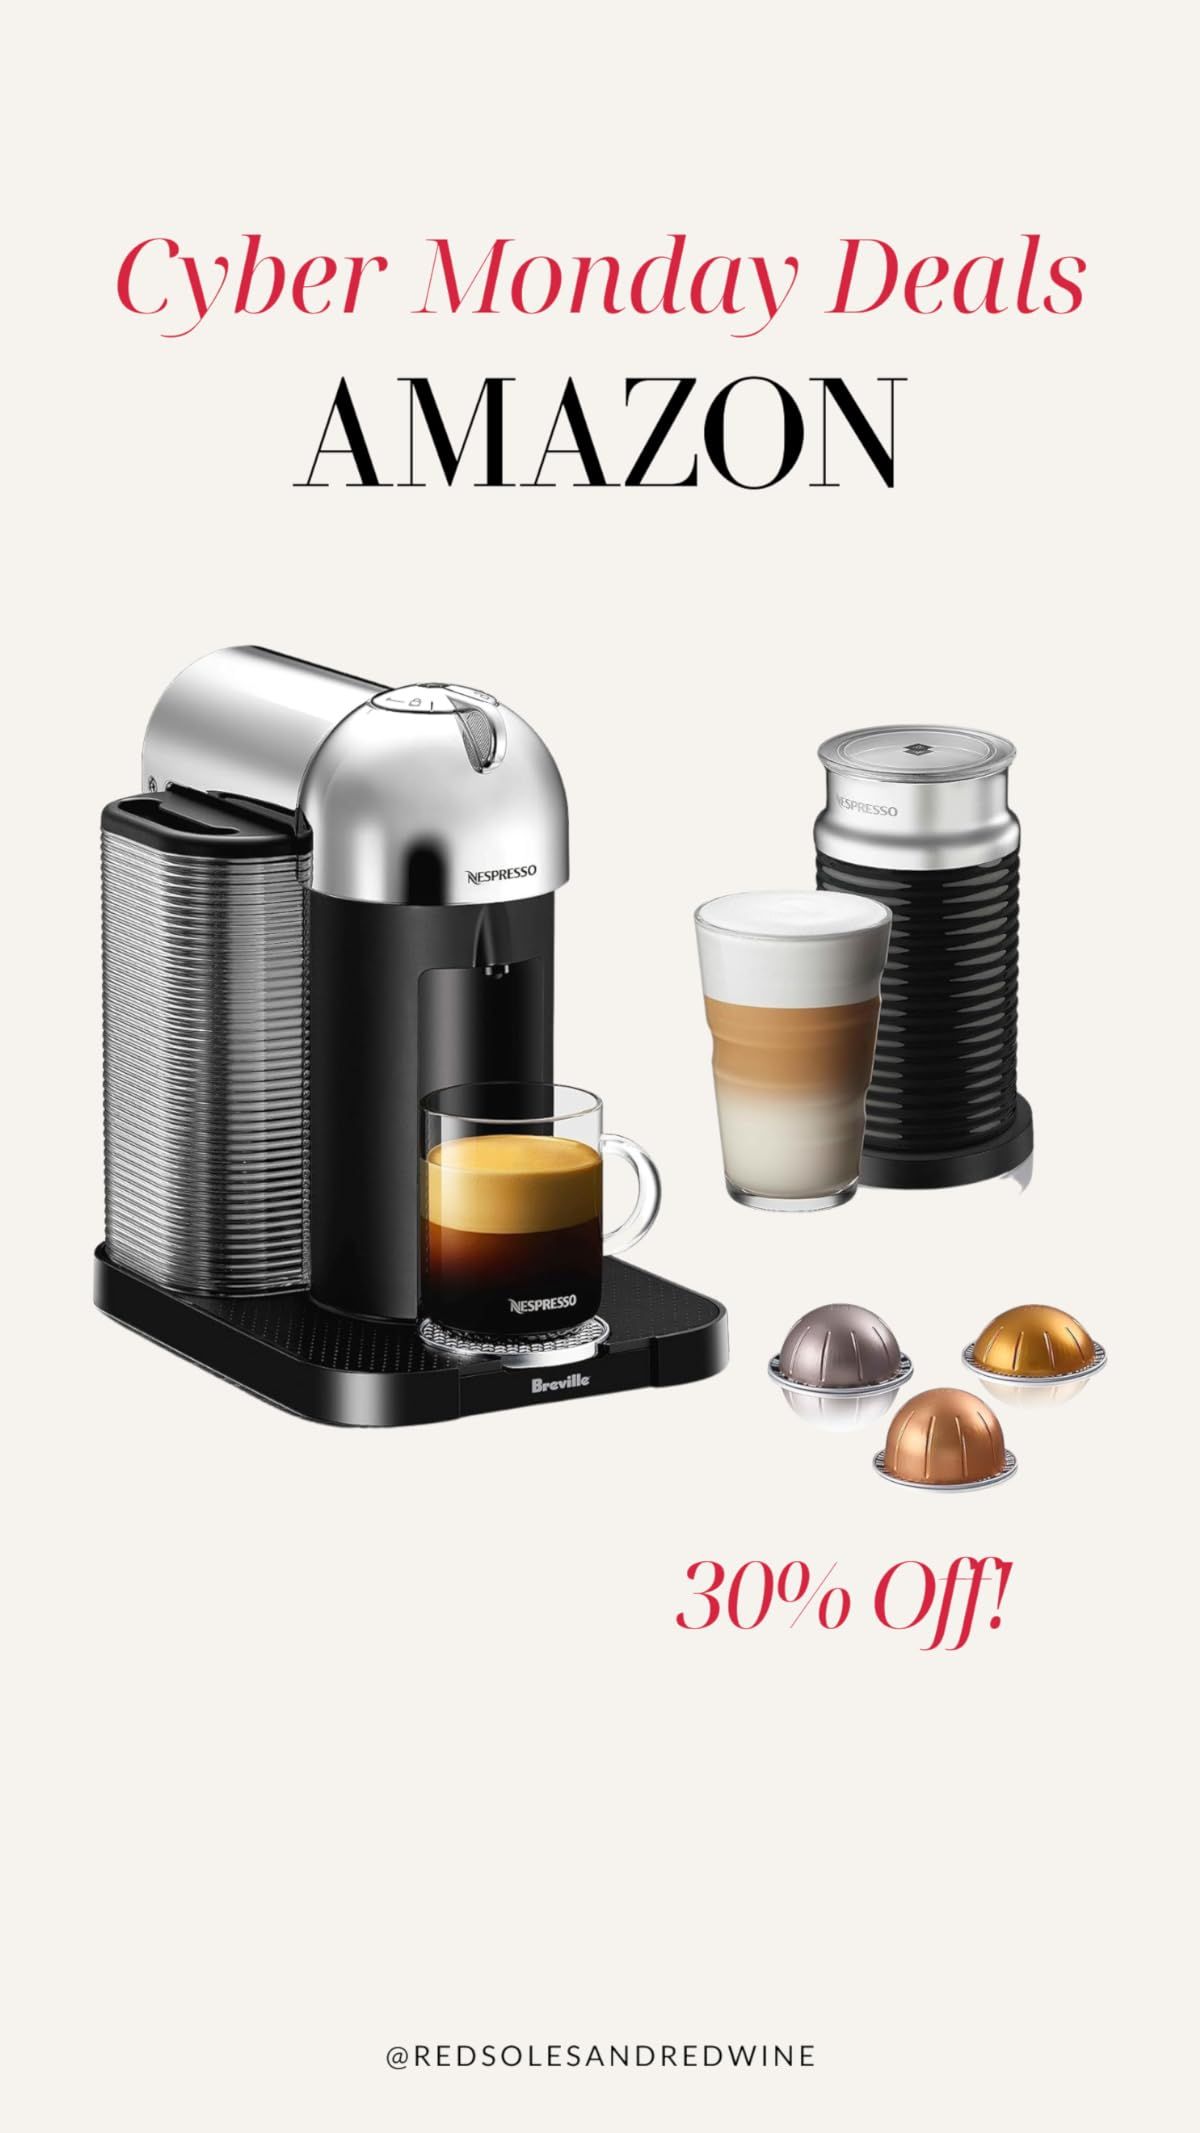 Nespresso Vertuo Coffee and Espresso Machine by Breville, 5 Cups, Chrome | Amazon (US)